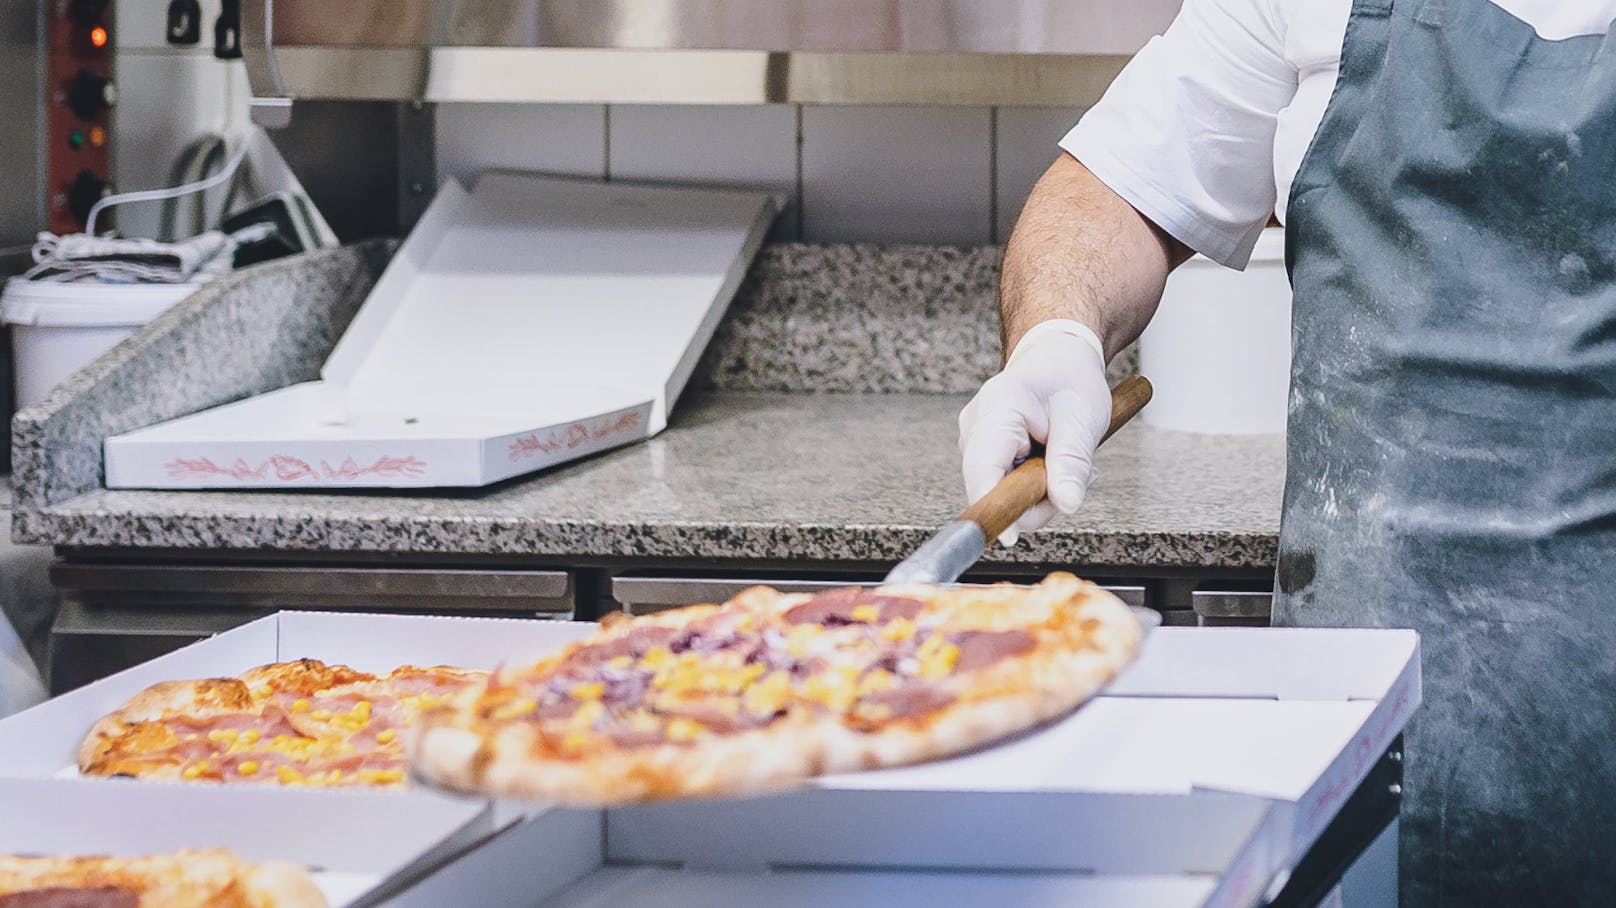 Durch die Restriktionen wegen der Coronavirus-Pandemie mussten viele Pizzerien auf Lieferservice umstellen